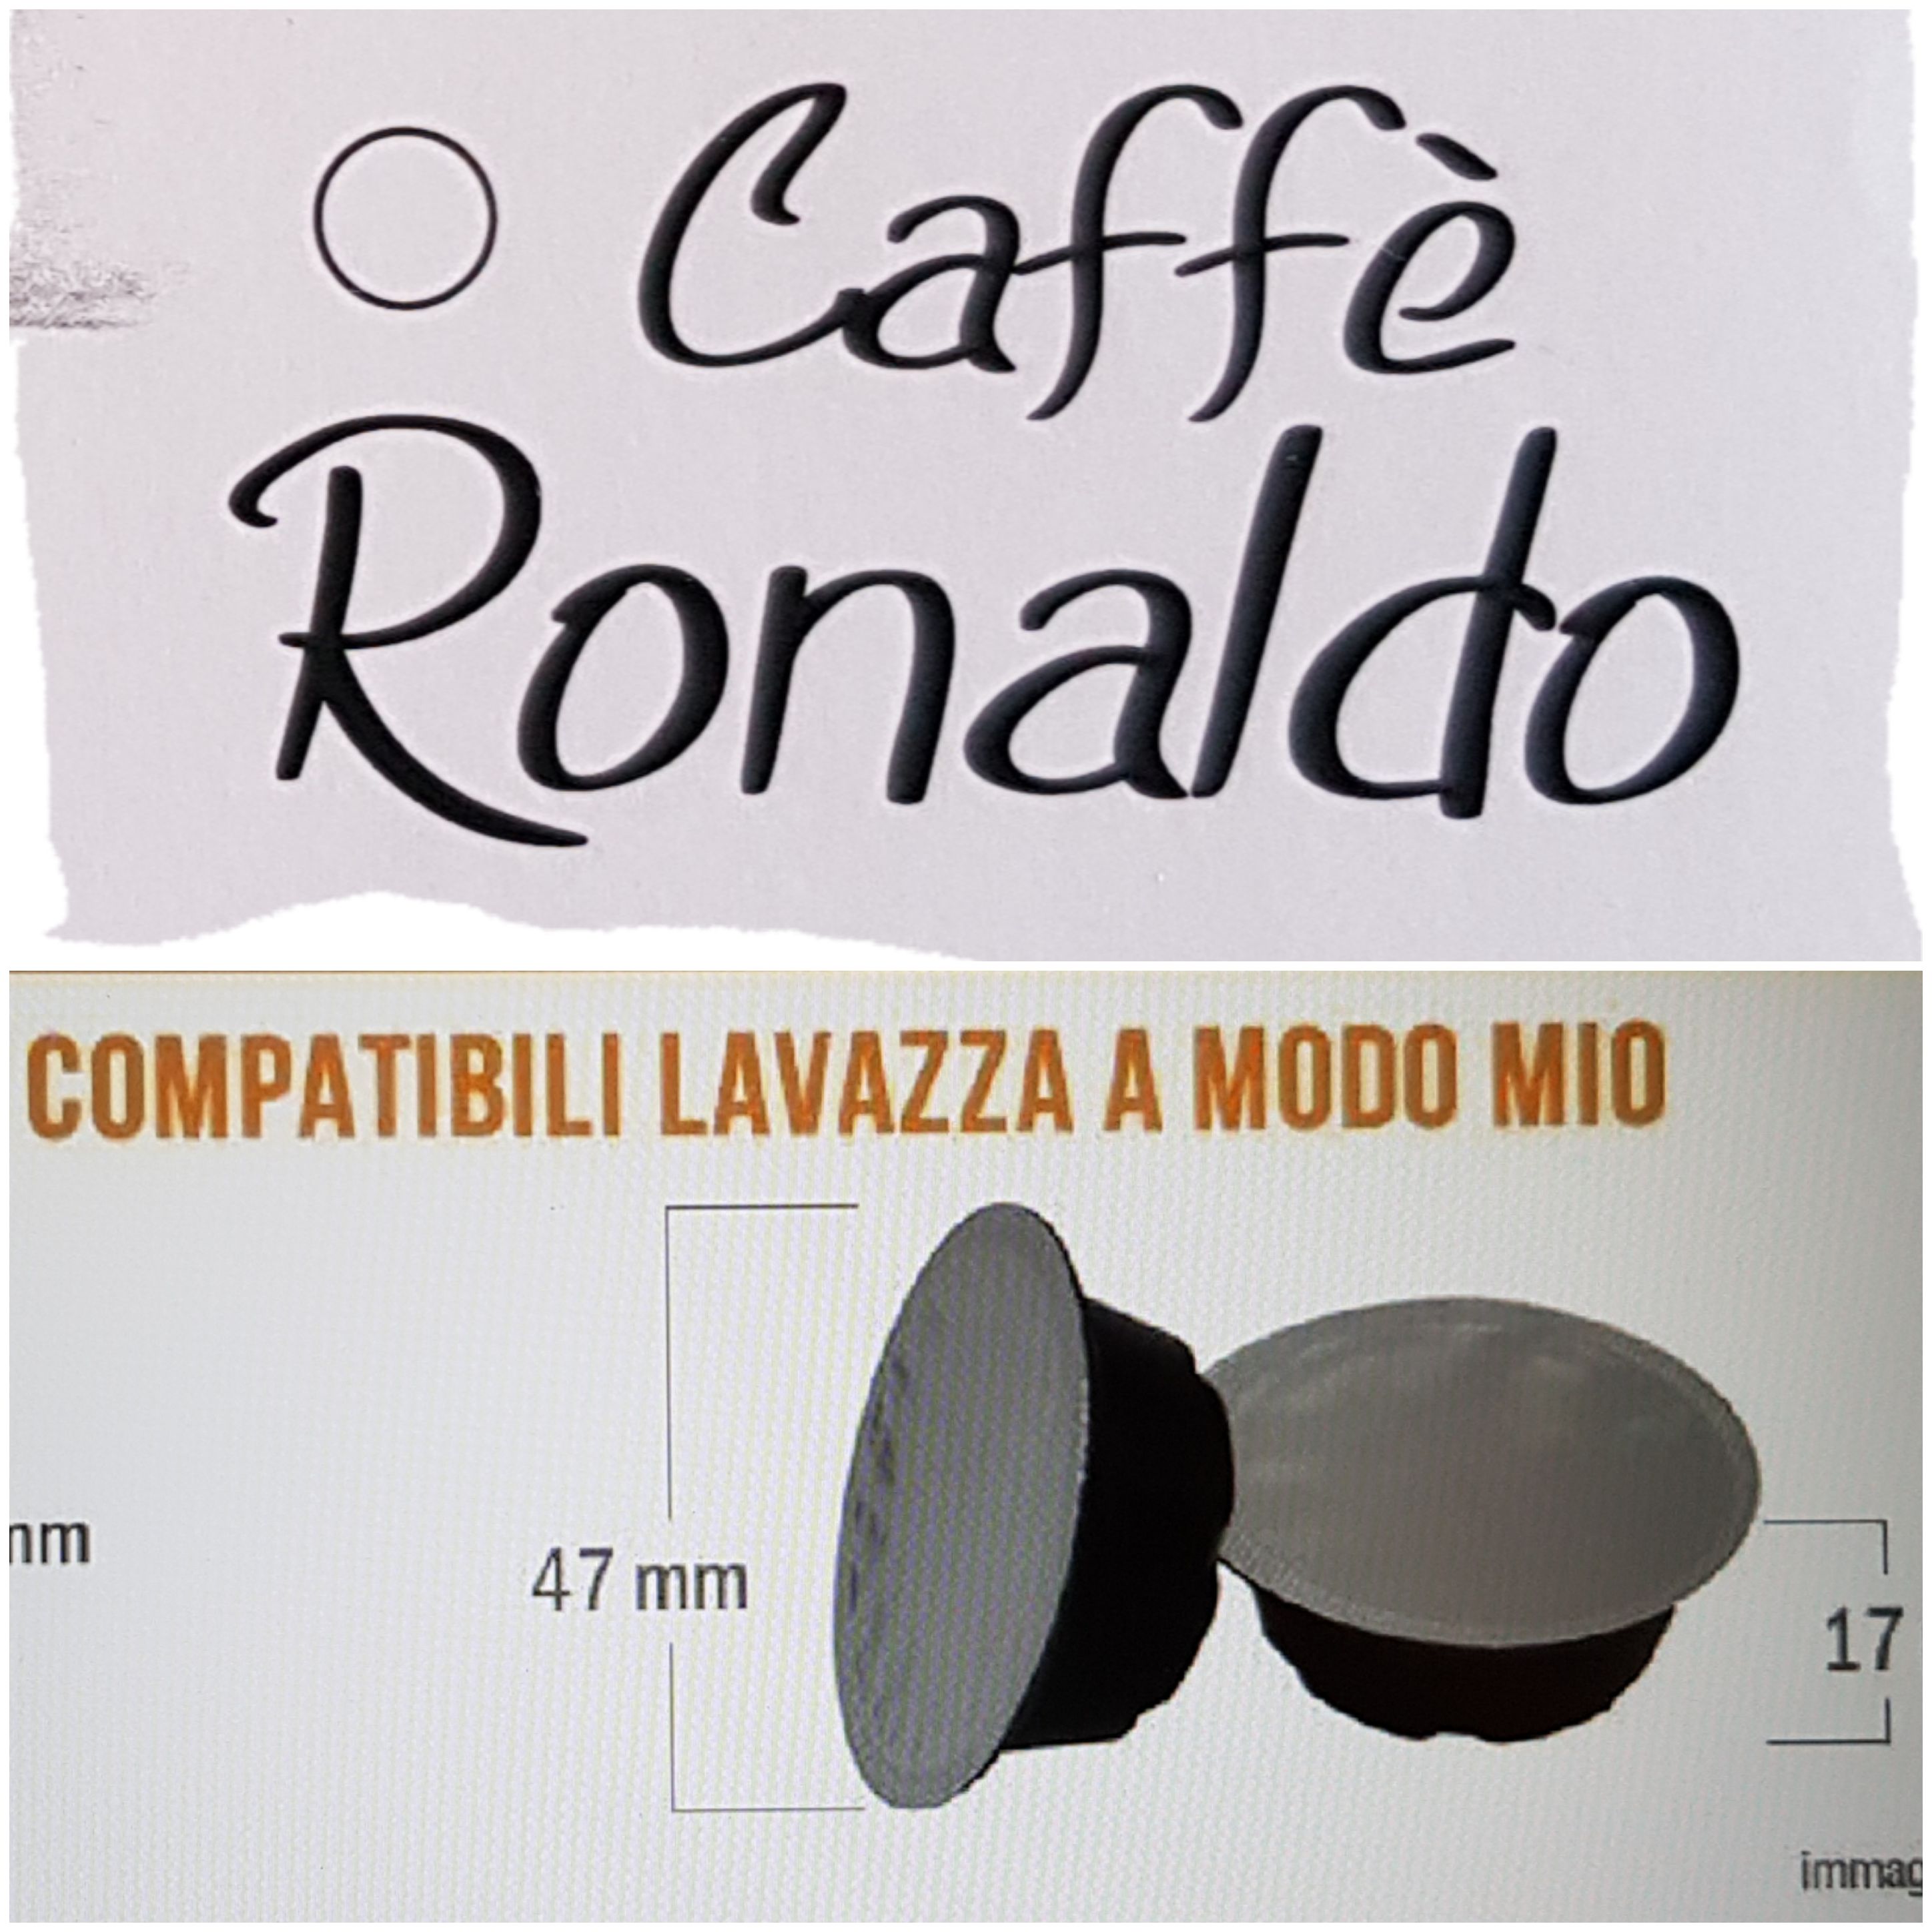 Caffè Ronaldo 100 AMODOMIO Se paghi 2, kit acc. regalo - Sped. o cons. a Palermo incl. - € 0,20 caps